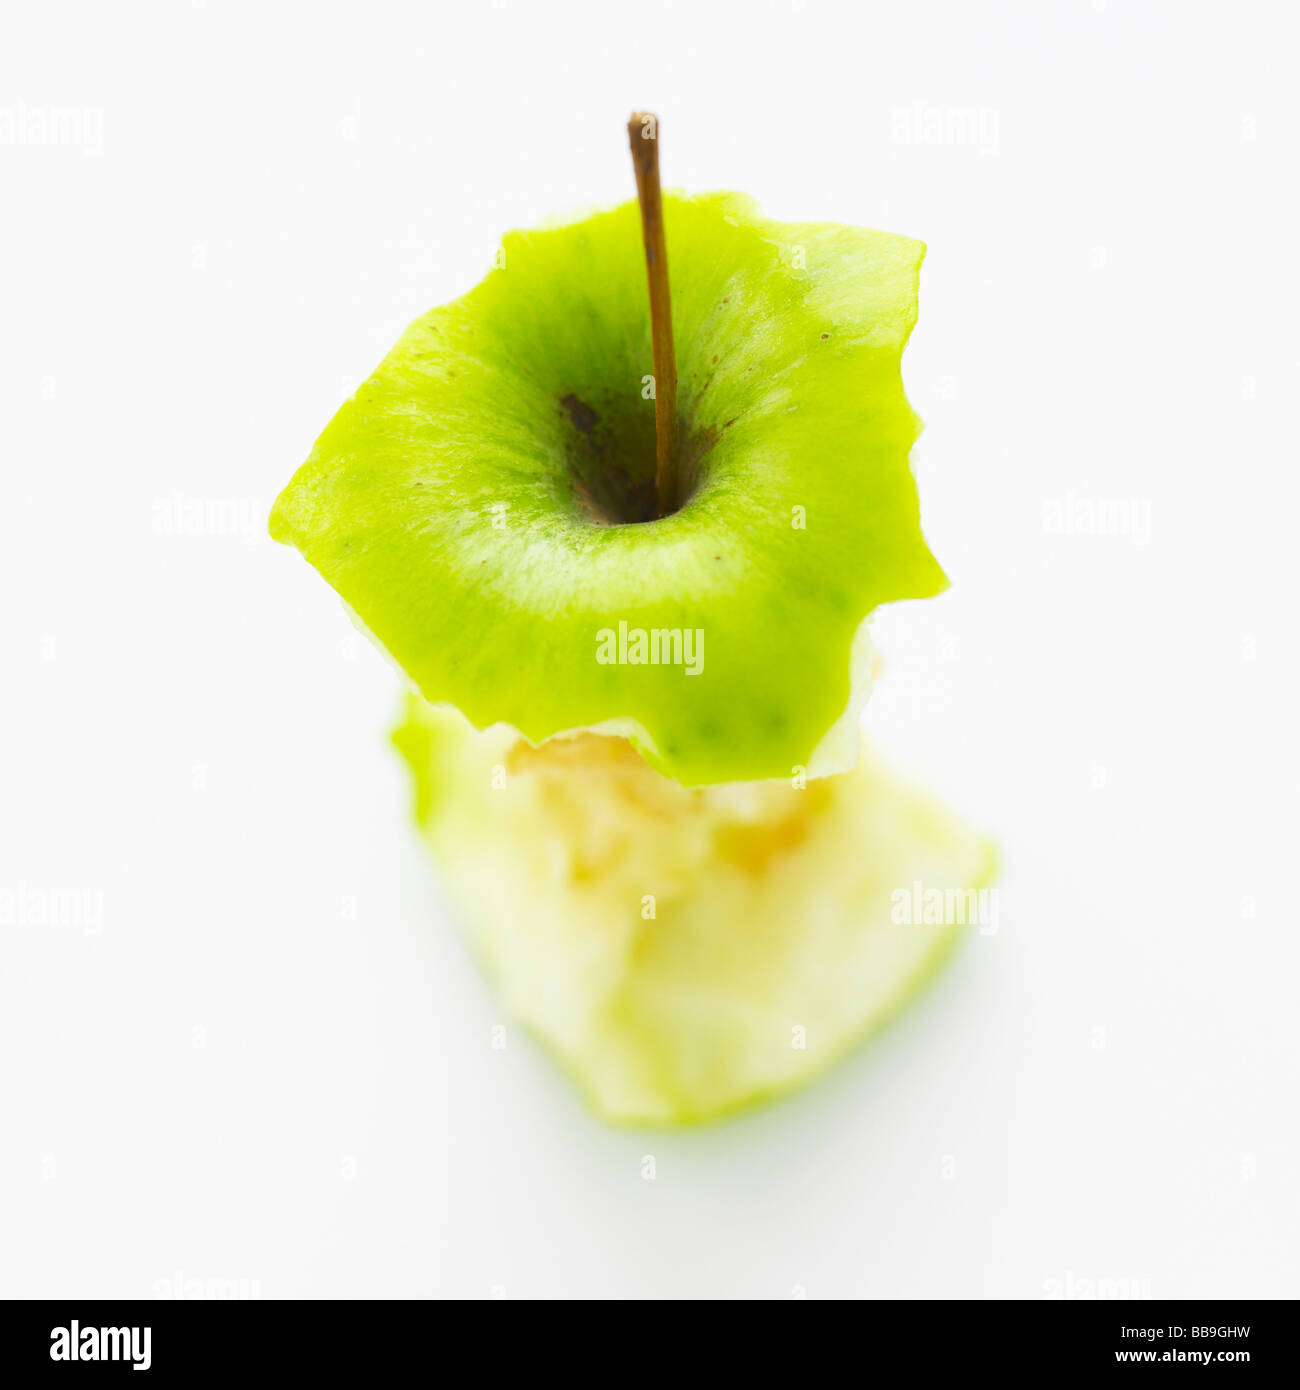 Un apple core isolato su uno sfondo bianco, shot con messa a fuoco poco profonda per sottolineare la forte forma grafica. Foto Stock